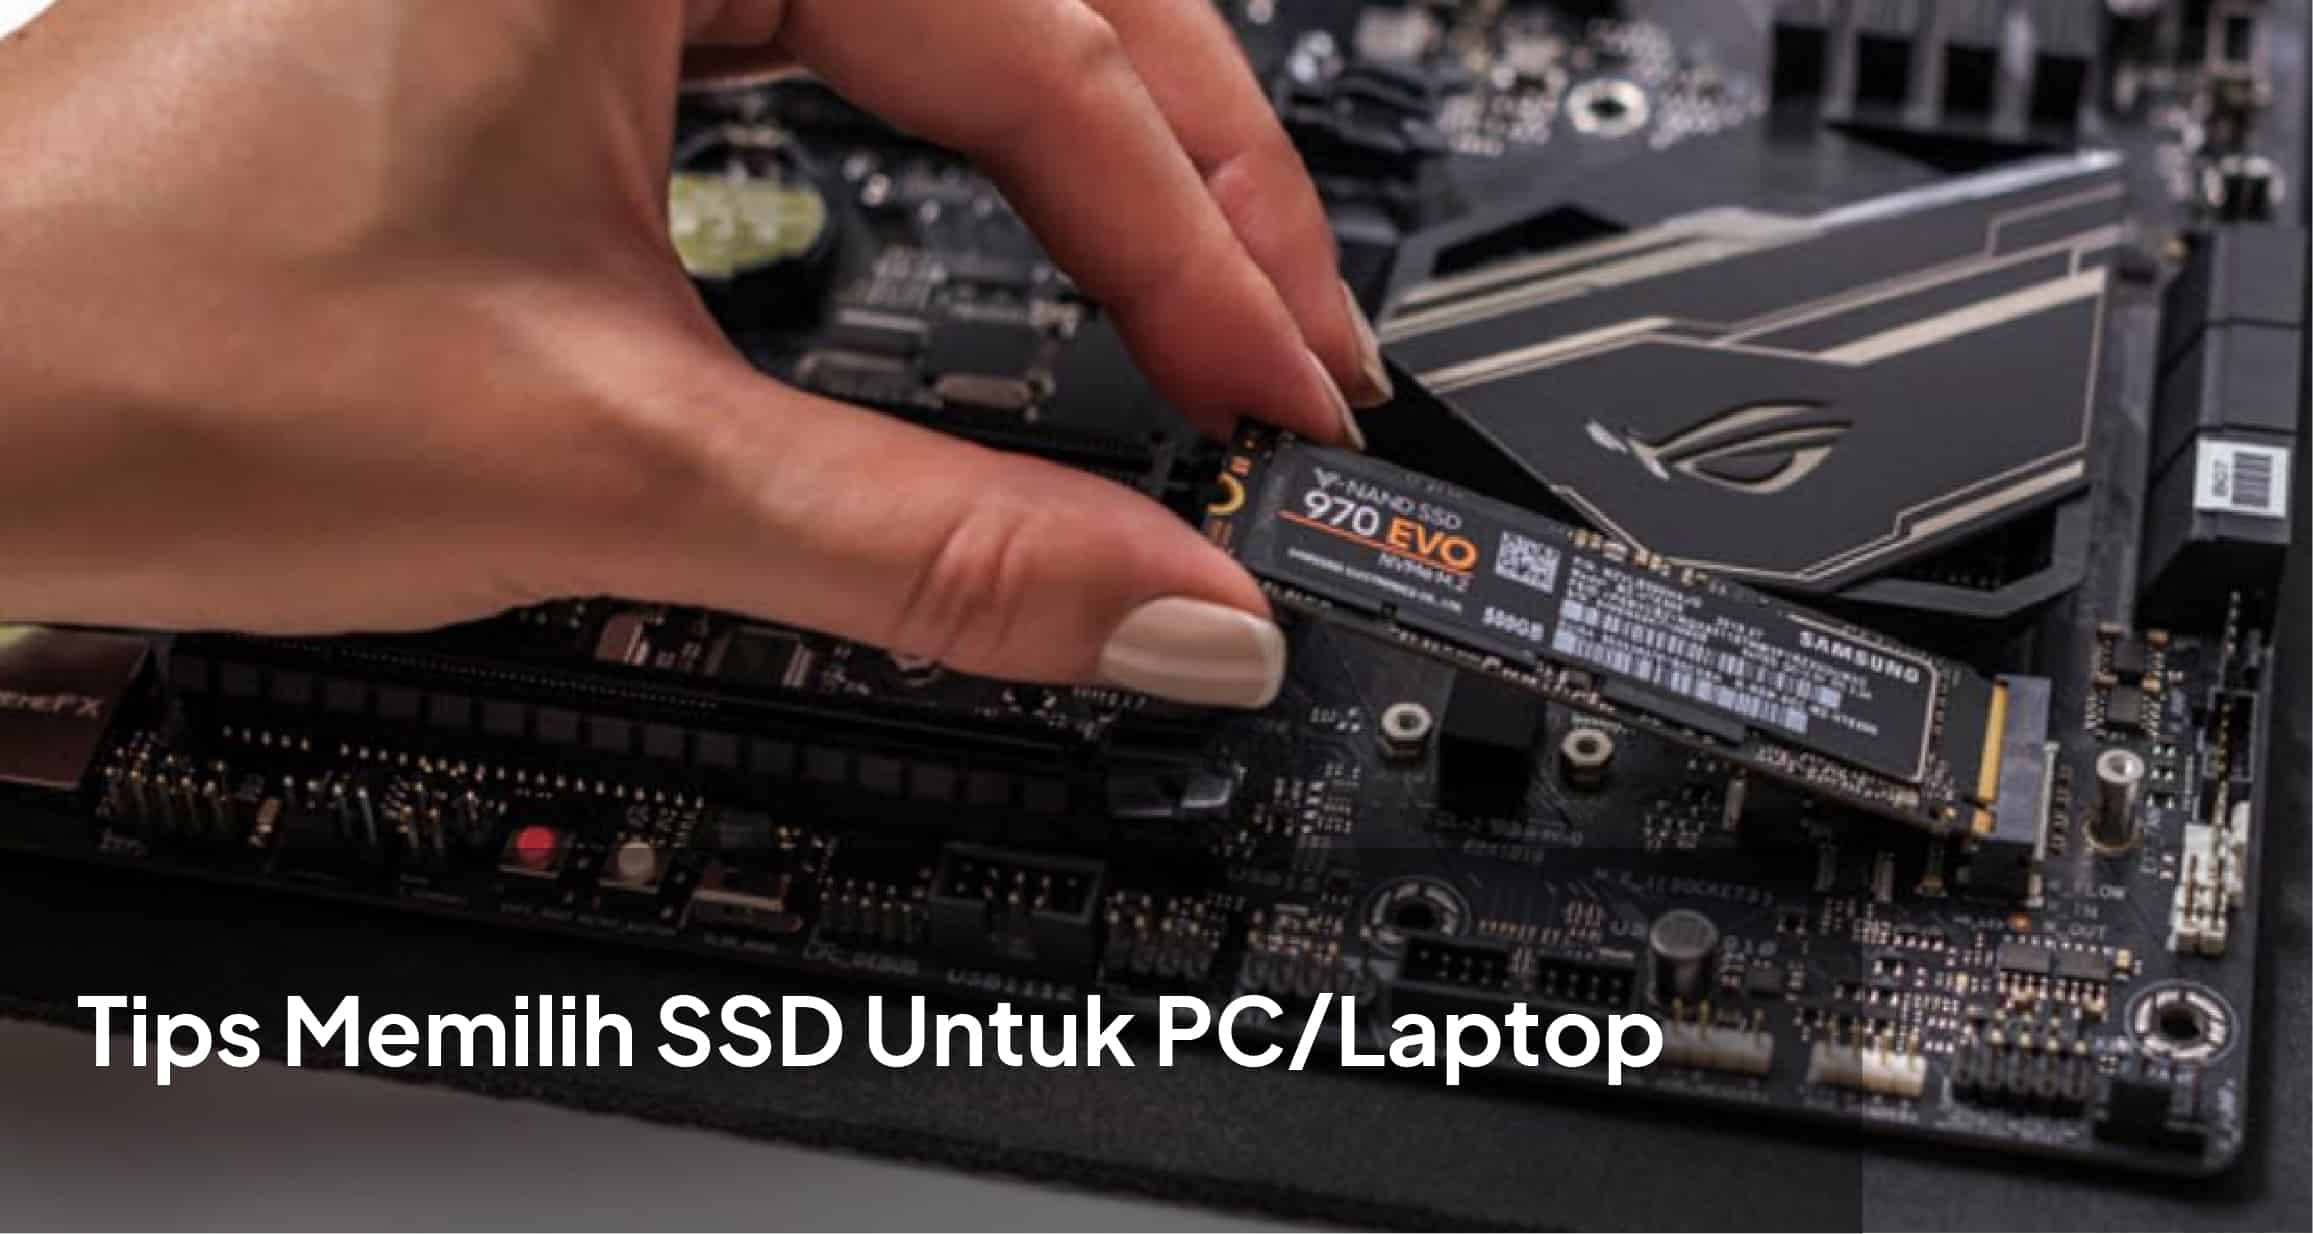 Toko Storage - Tips Memilih SSD Terbaik Untuk PC/Laptop